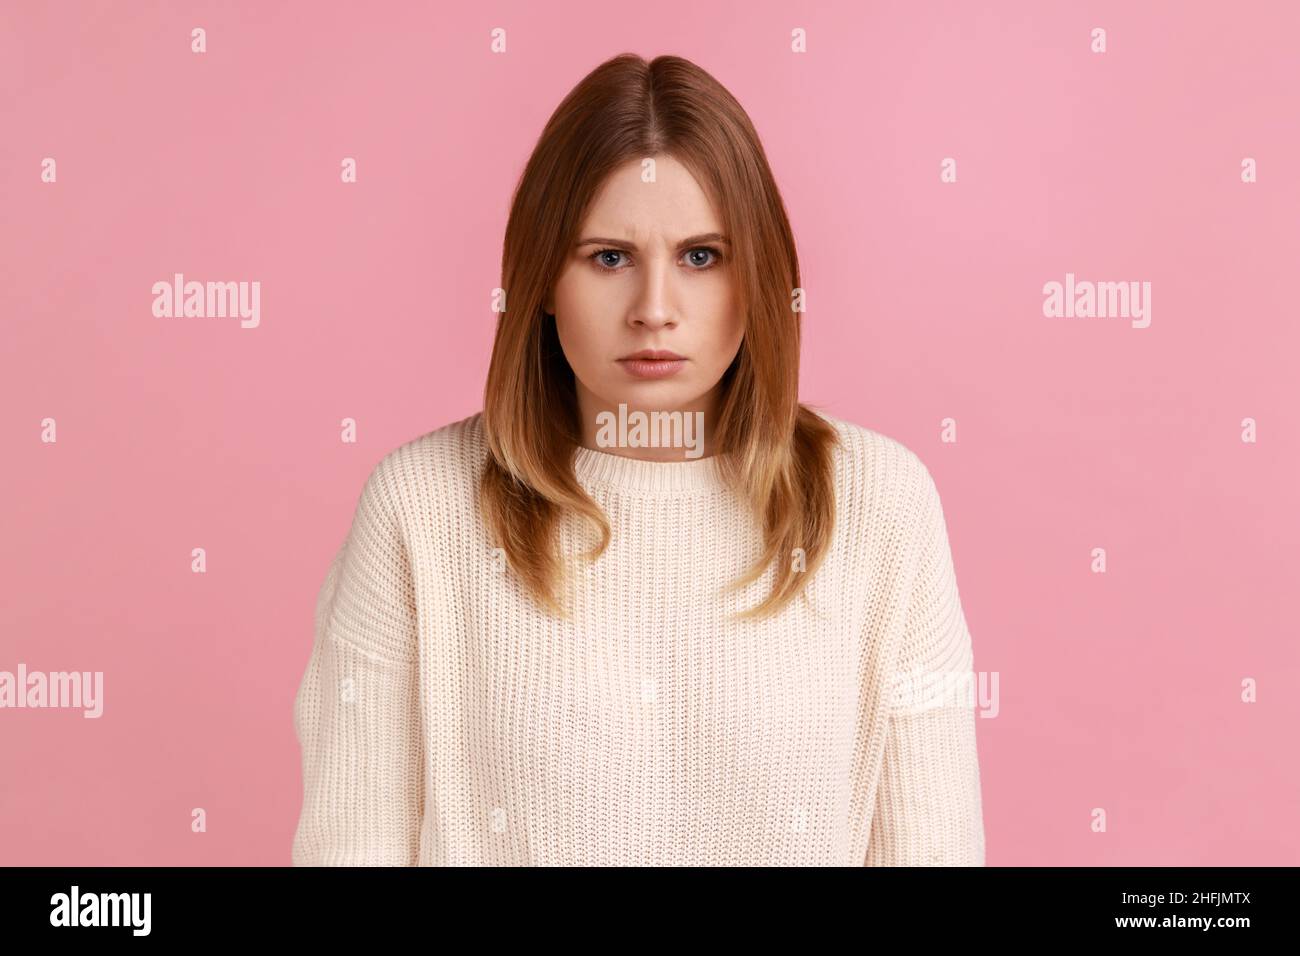 Porträt eines jungen Erwachsenen wütend ernst blonde Frau Blick auf die Kamera mit strengen negativen Ausdruck, Aggression, trägt weißen Pullover. Innenaufnahme des Studios isoliert auf rosa Hintergrund. Stockfoto